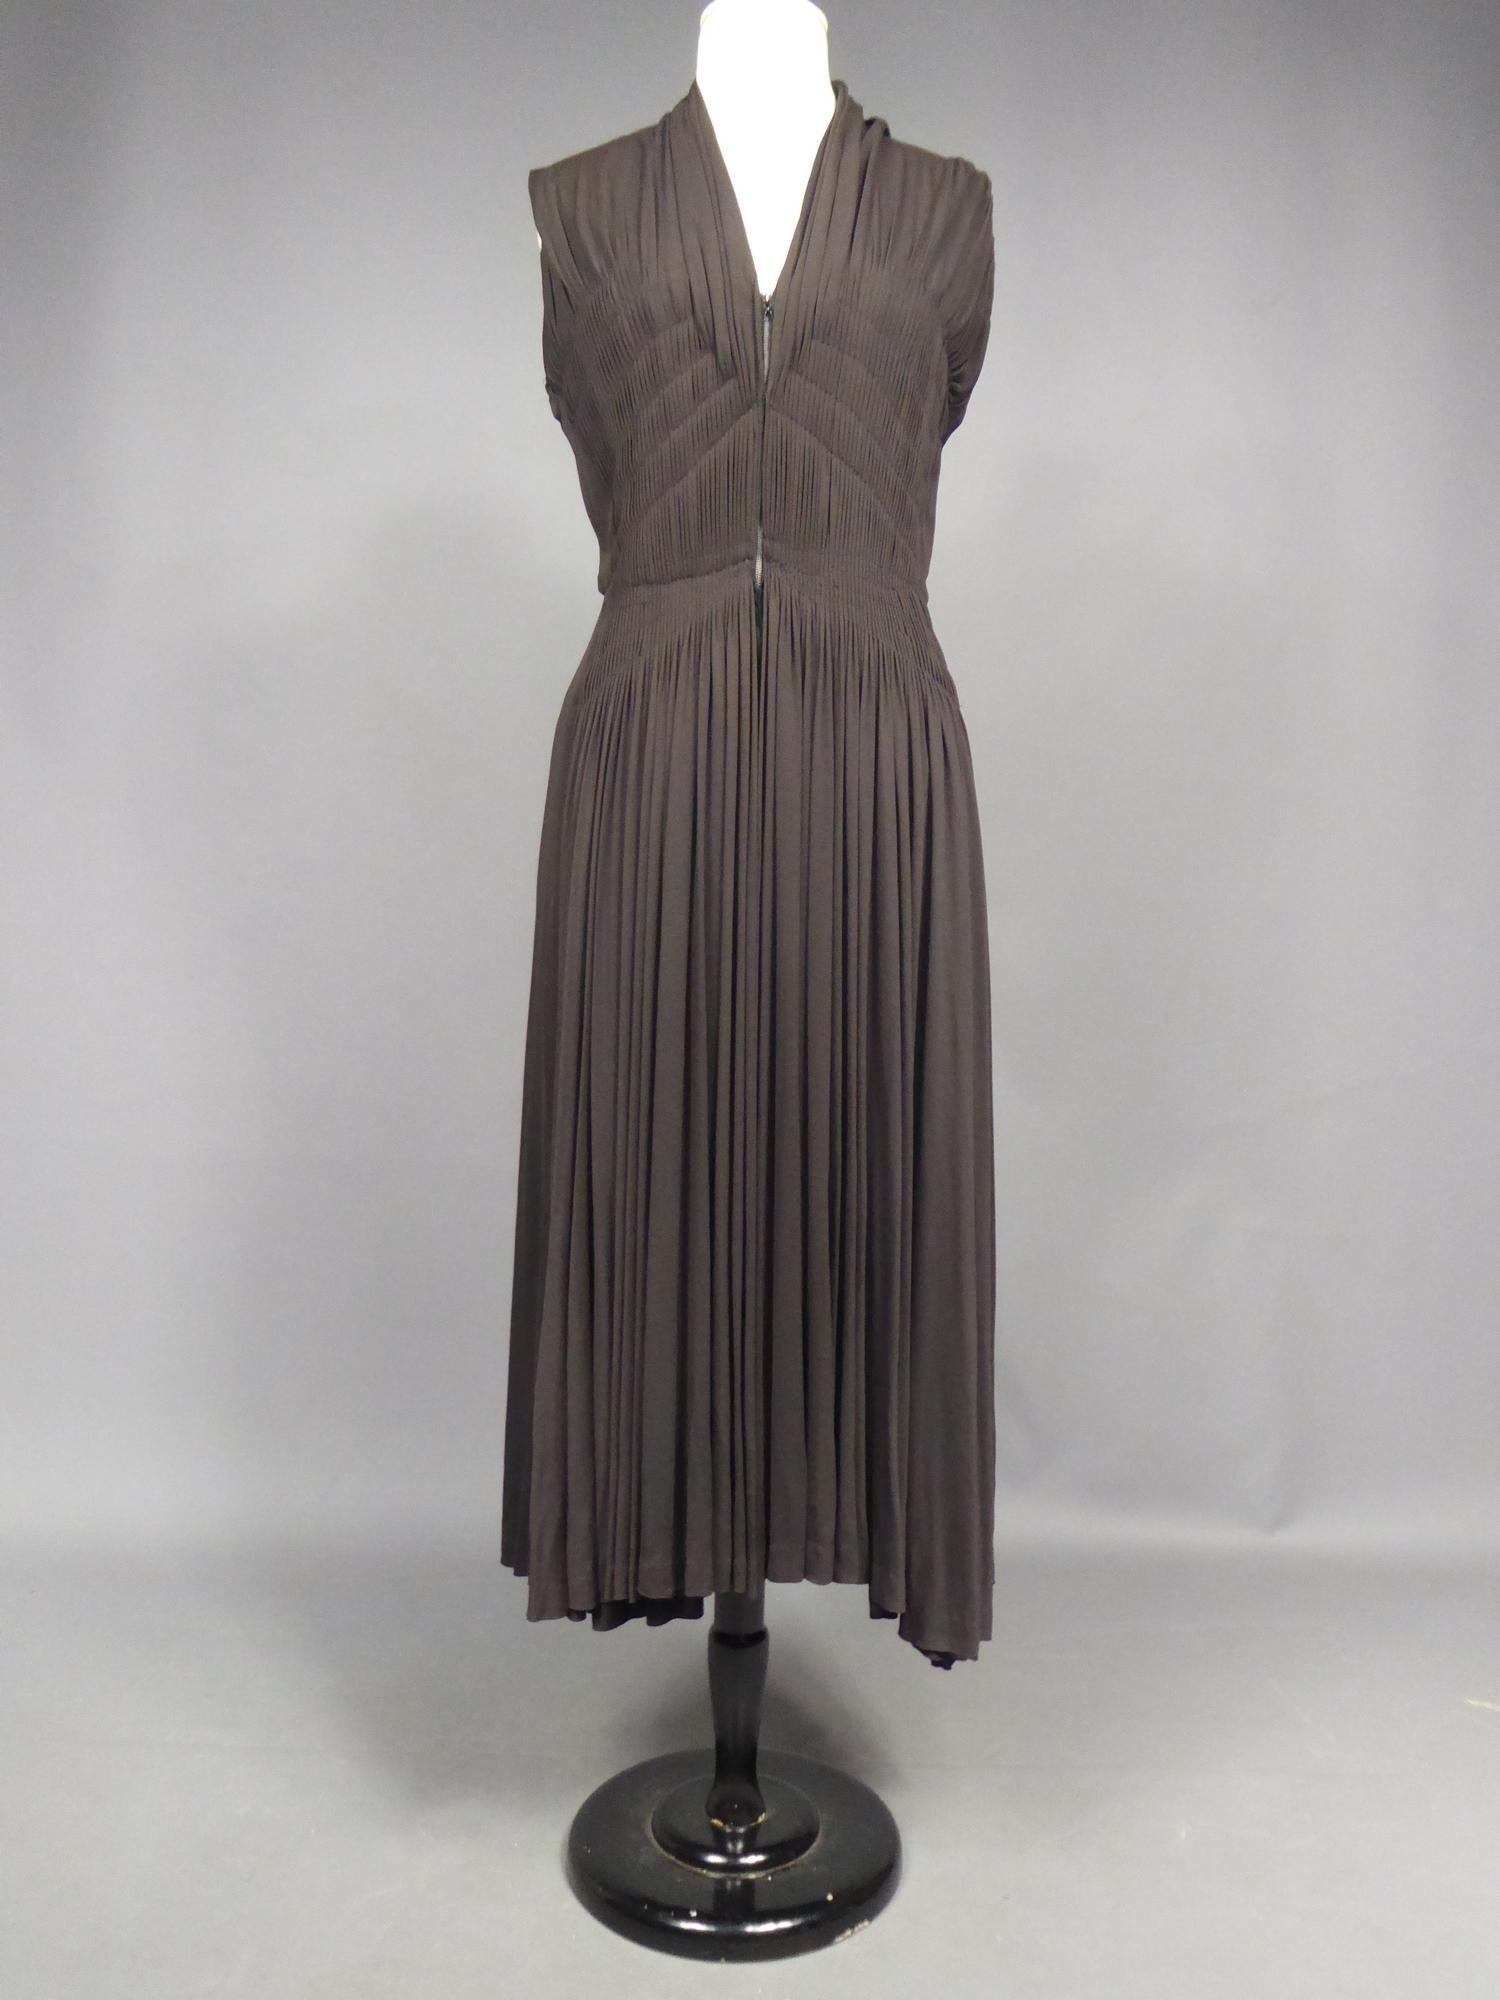 Circa 1950

France

Superbe robe de cocktail attribuée à Madame Grès en jersey de soie brun foncé à bolduc numérotée 63926 datant de la fin des années 1940. Robe sans manches à l'encolure pointue et au jersey plissé ruché:: dessinant en diagonale la